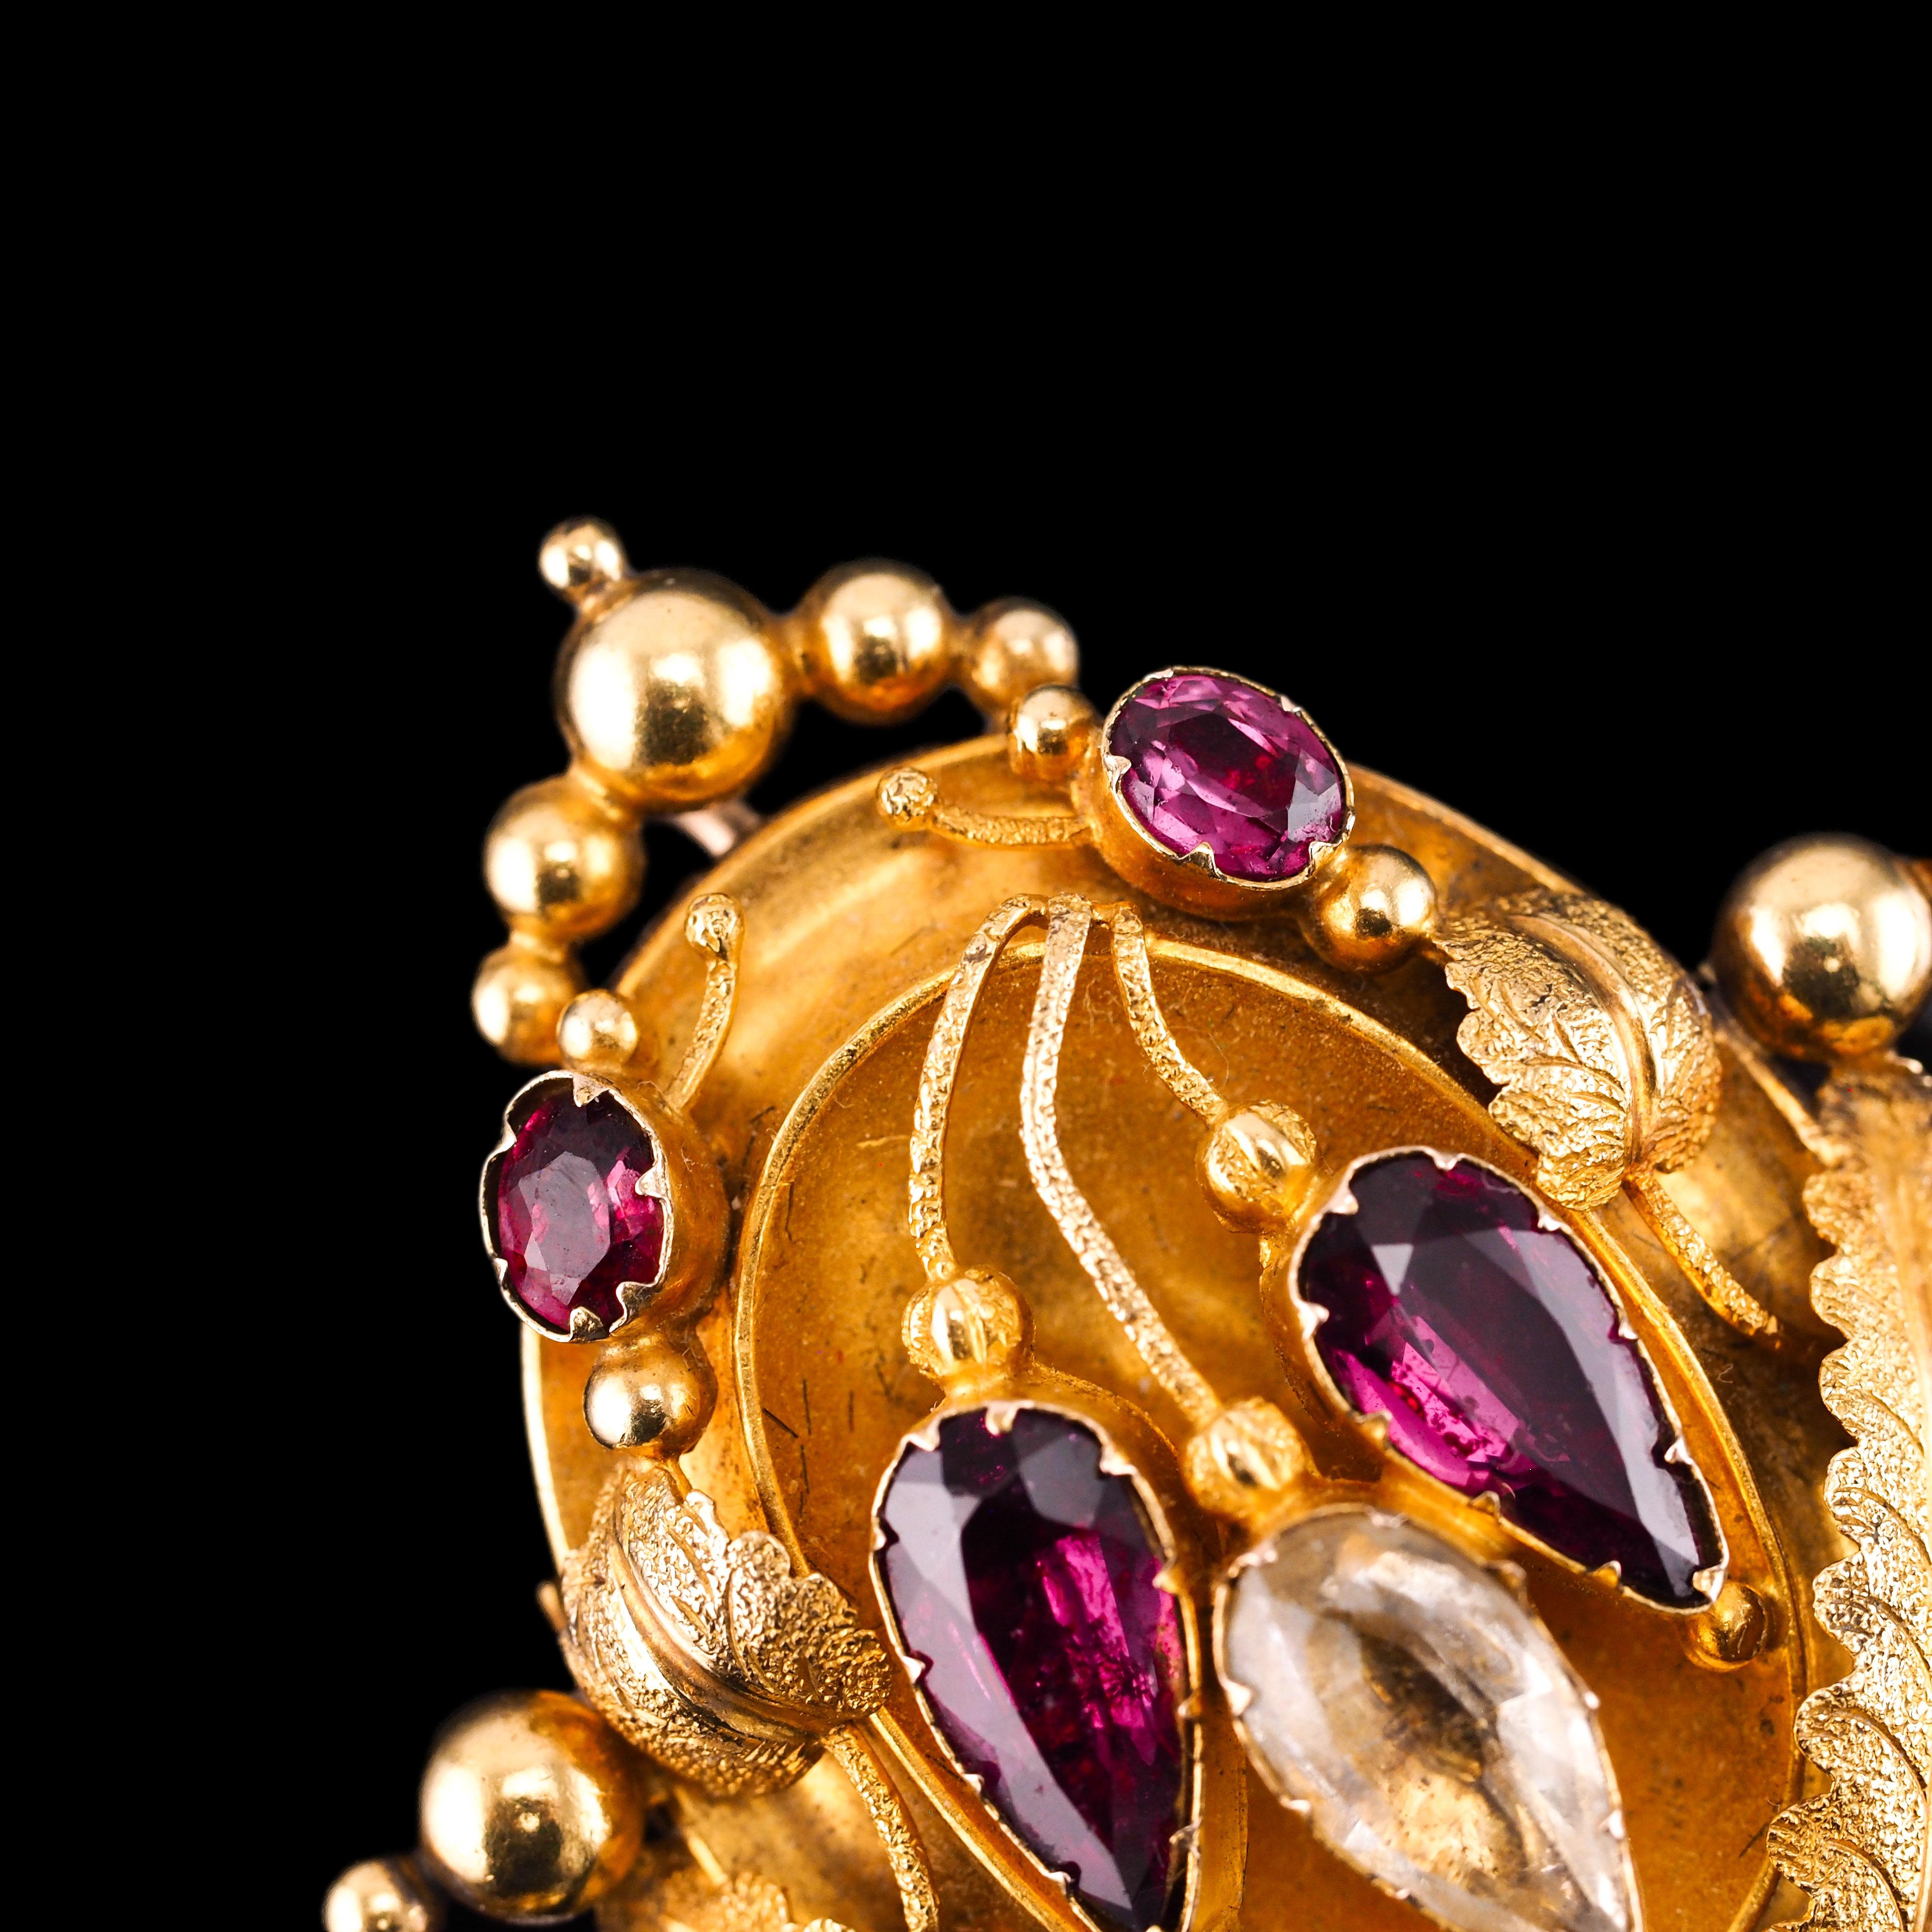 Antique 18K Gold Brooch Pendant & Earrings Garnet & Chrysoberyl - c.1870 For Sale 13